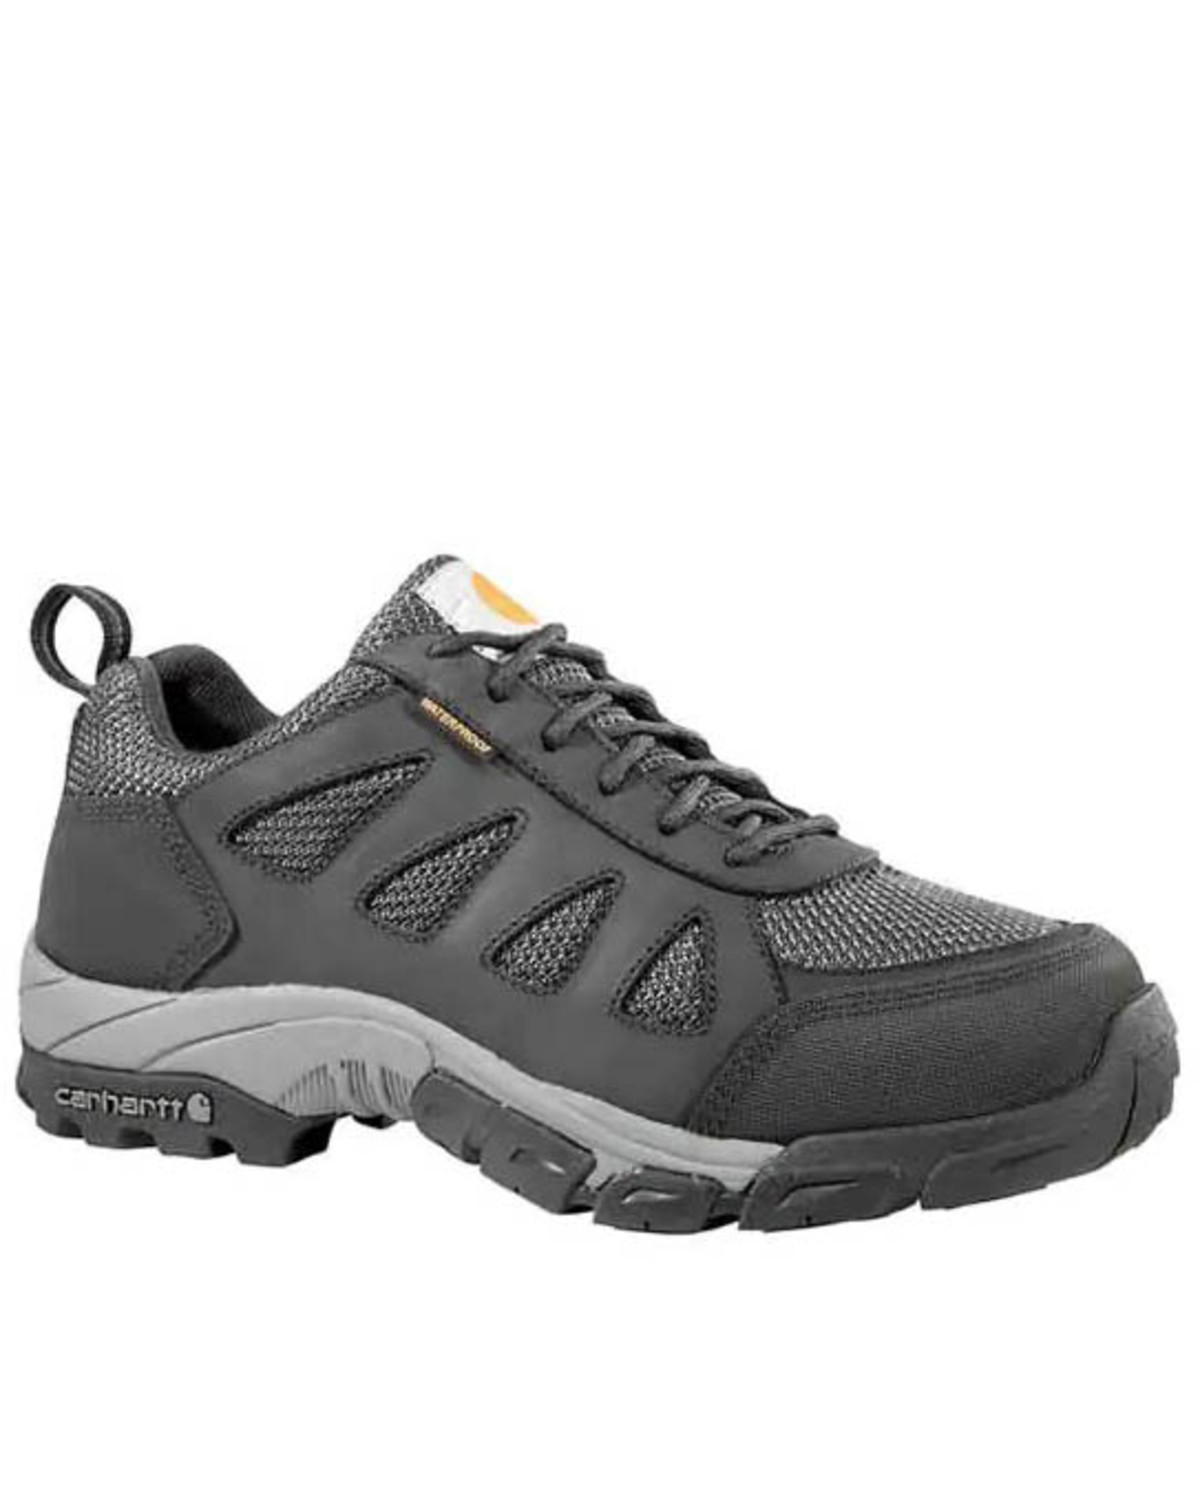 Carhartt Men's Lightweight Low Waterproof Hiker Work Shoe - Soft Toe ...